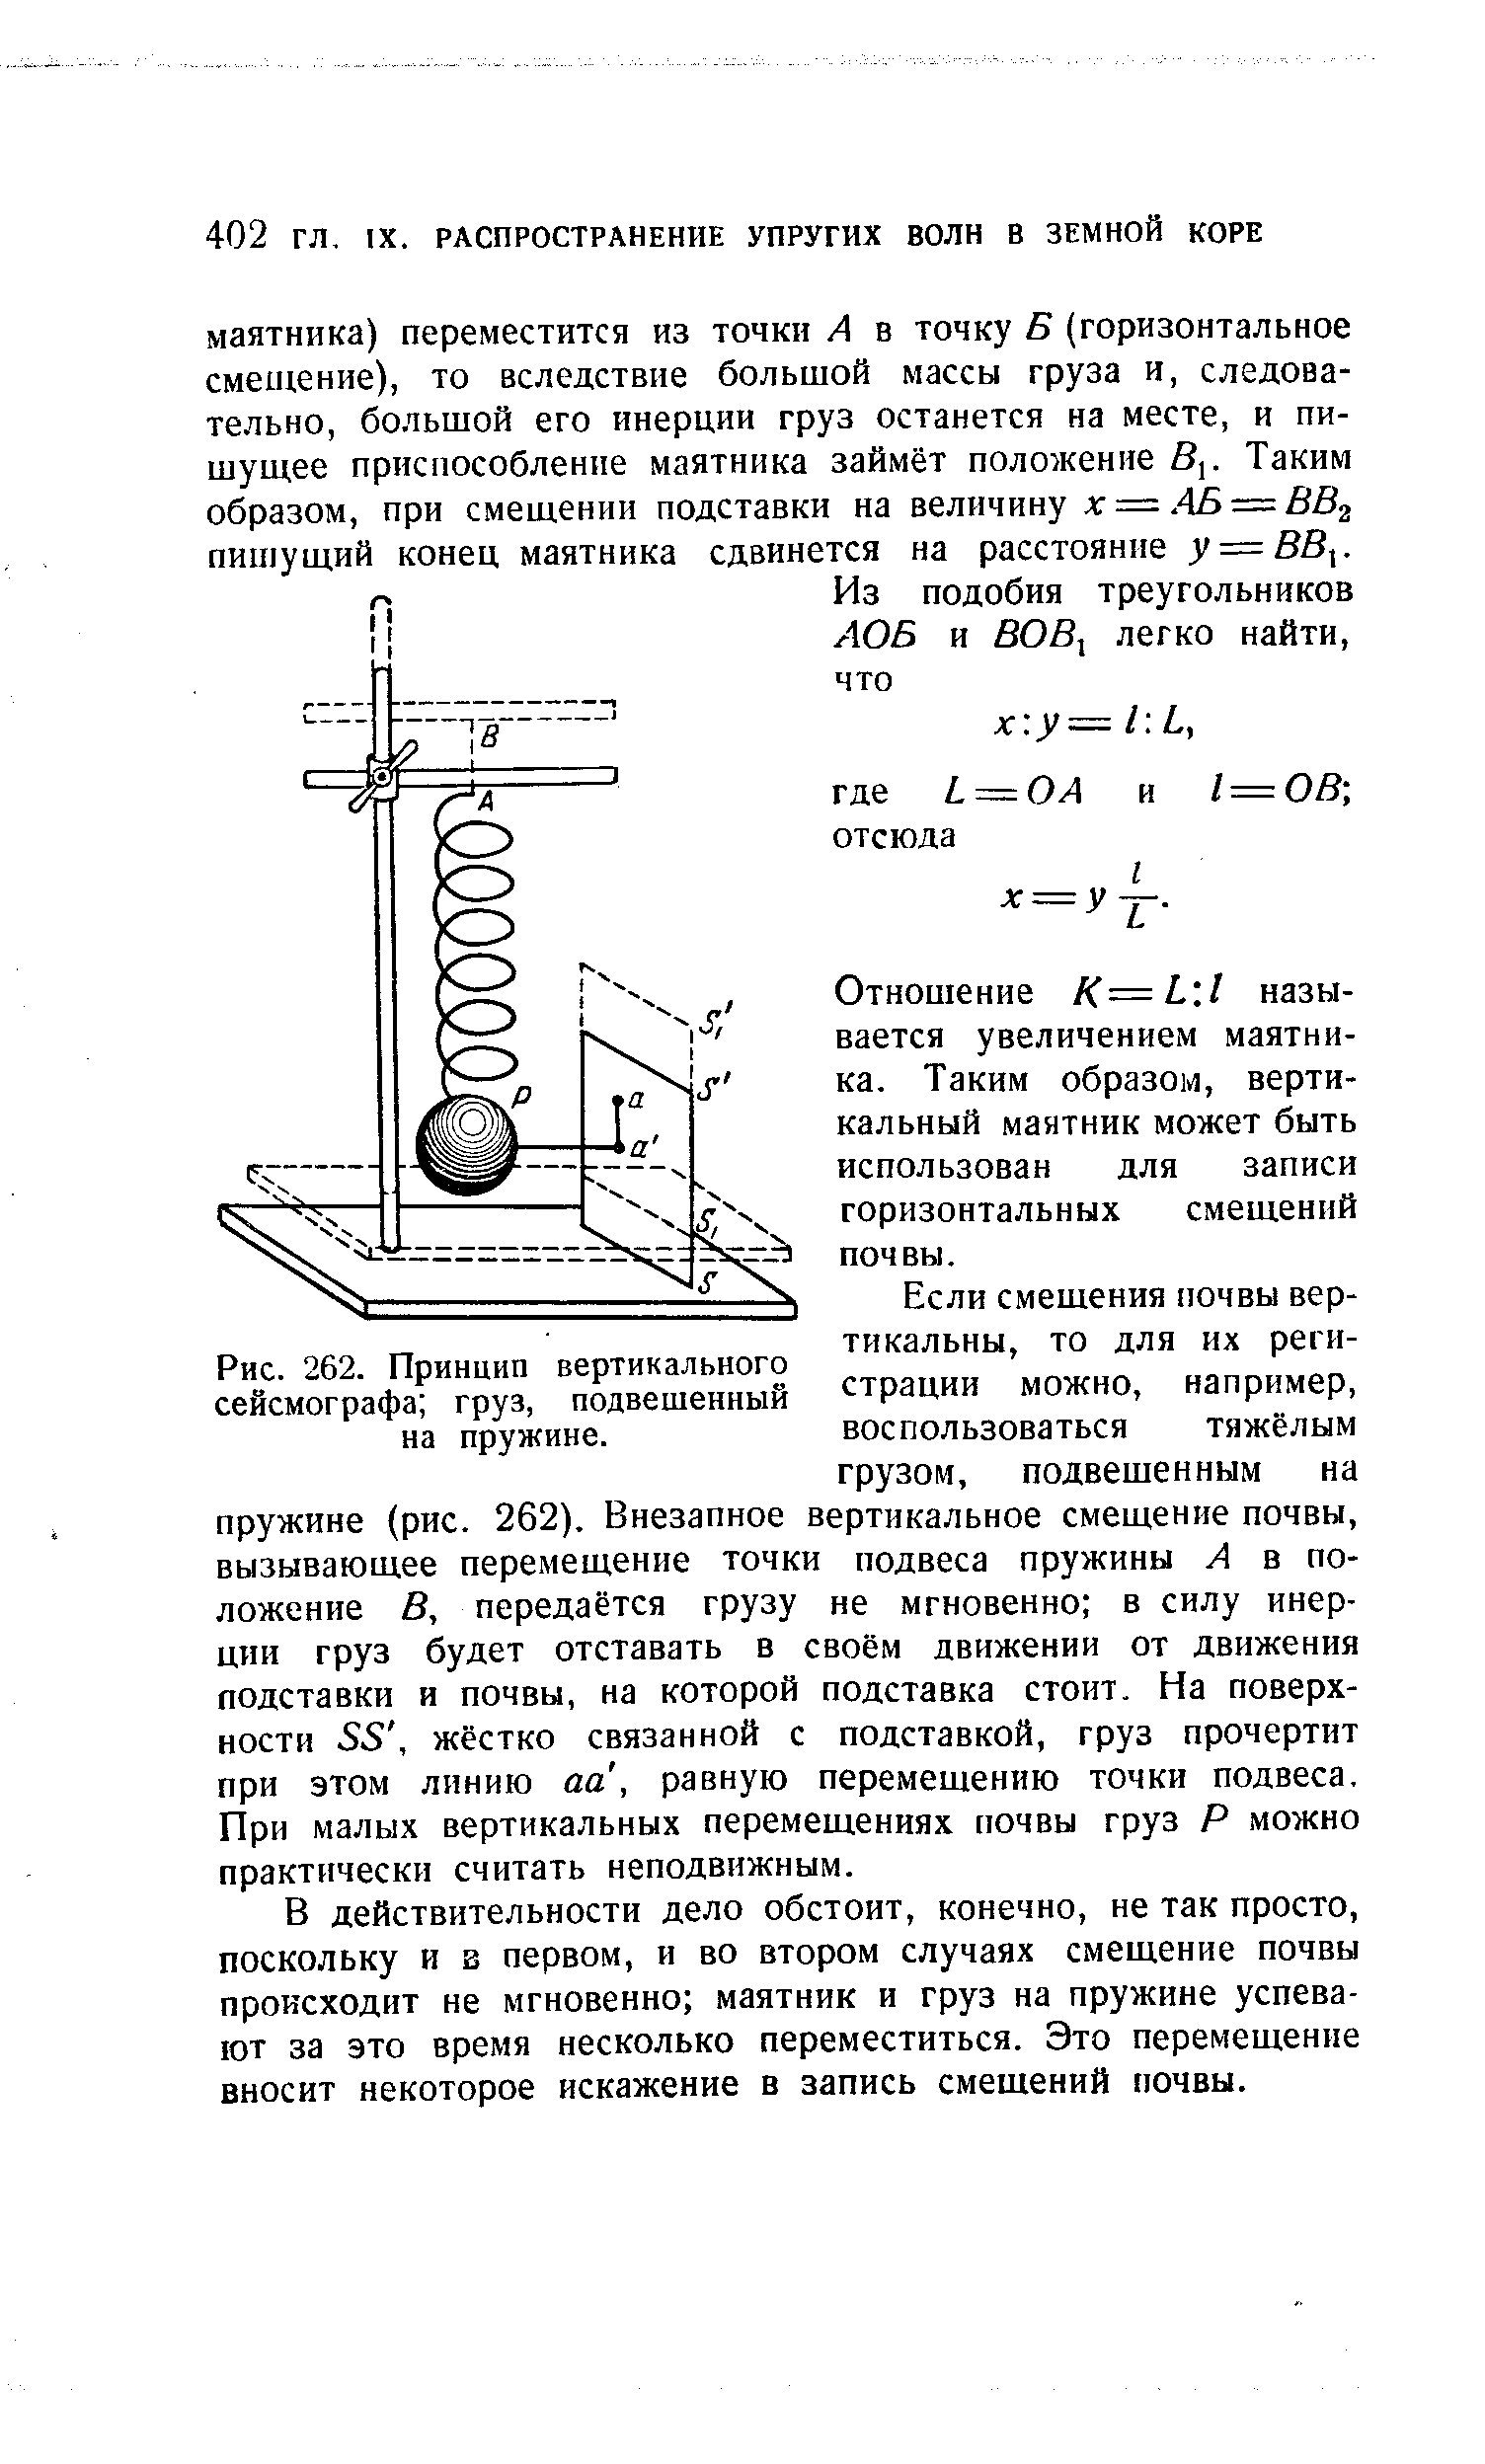 Рис. 262. Принцип вертикального сейсмографа груз, подвешенный на пружине.
